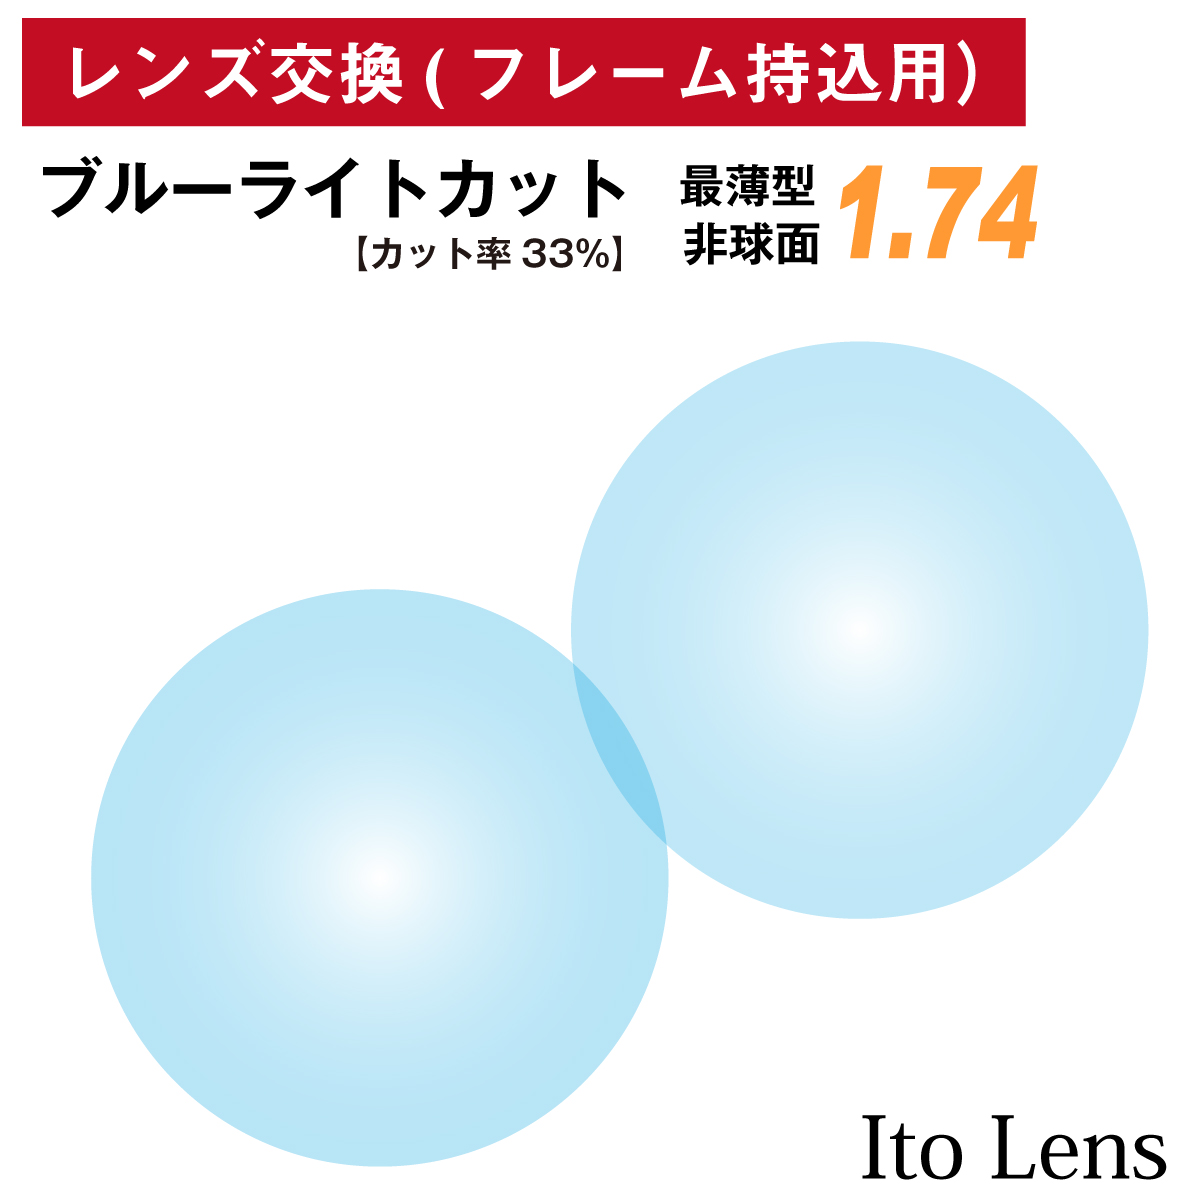 1305円 至高 コンフル 160 AS トランジェ レンズ 単品販売 フレーム 持ち込み 交換可能 度あり対応 イトー 非球面レンズ UVカット付 ２枚